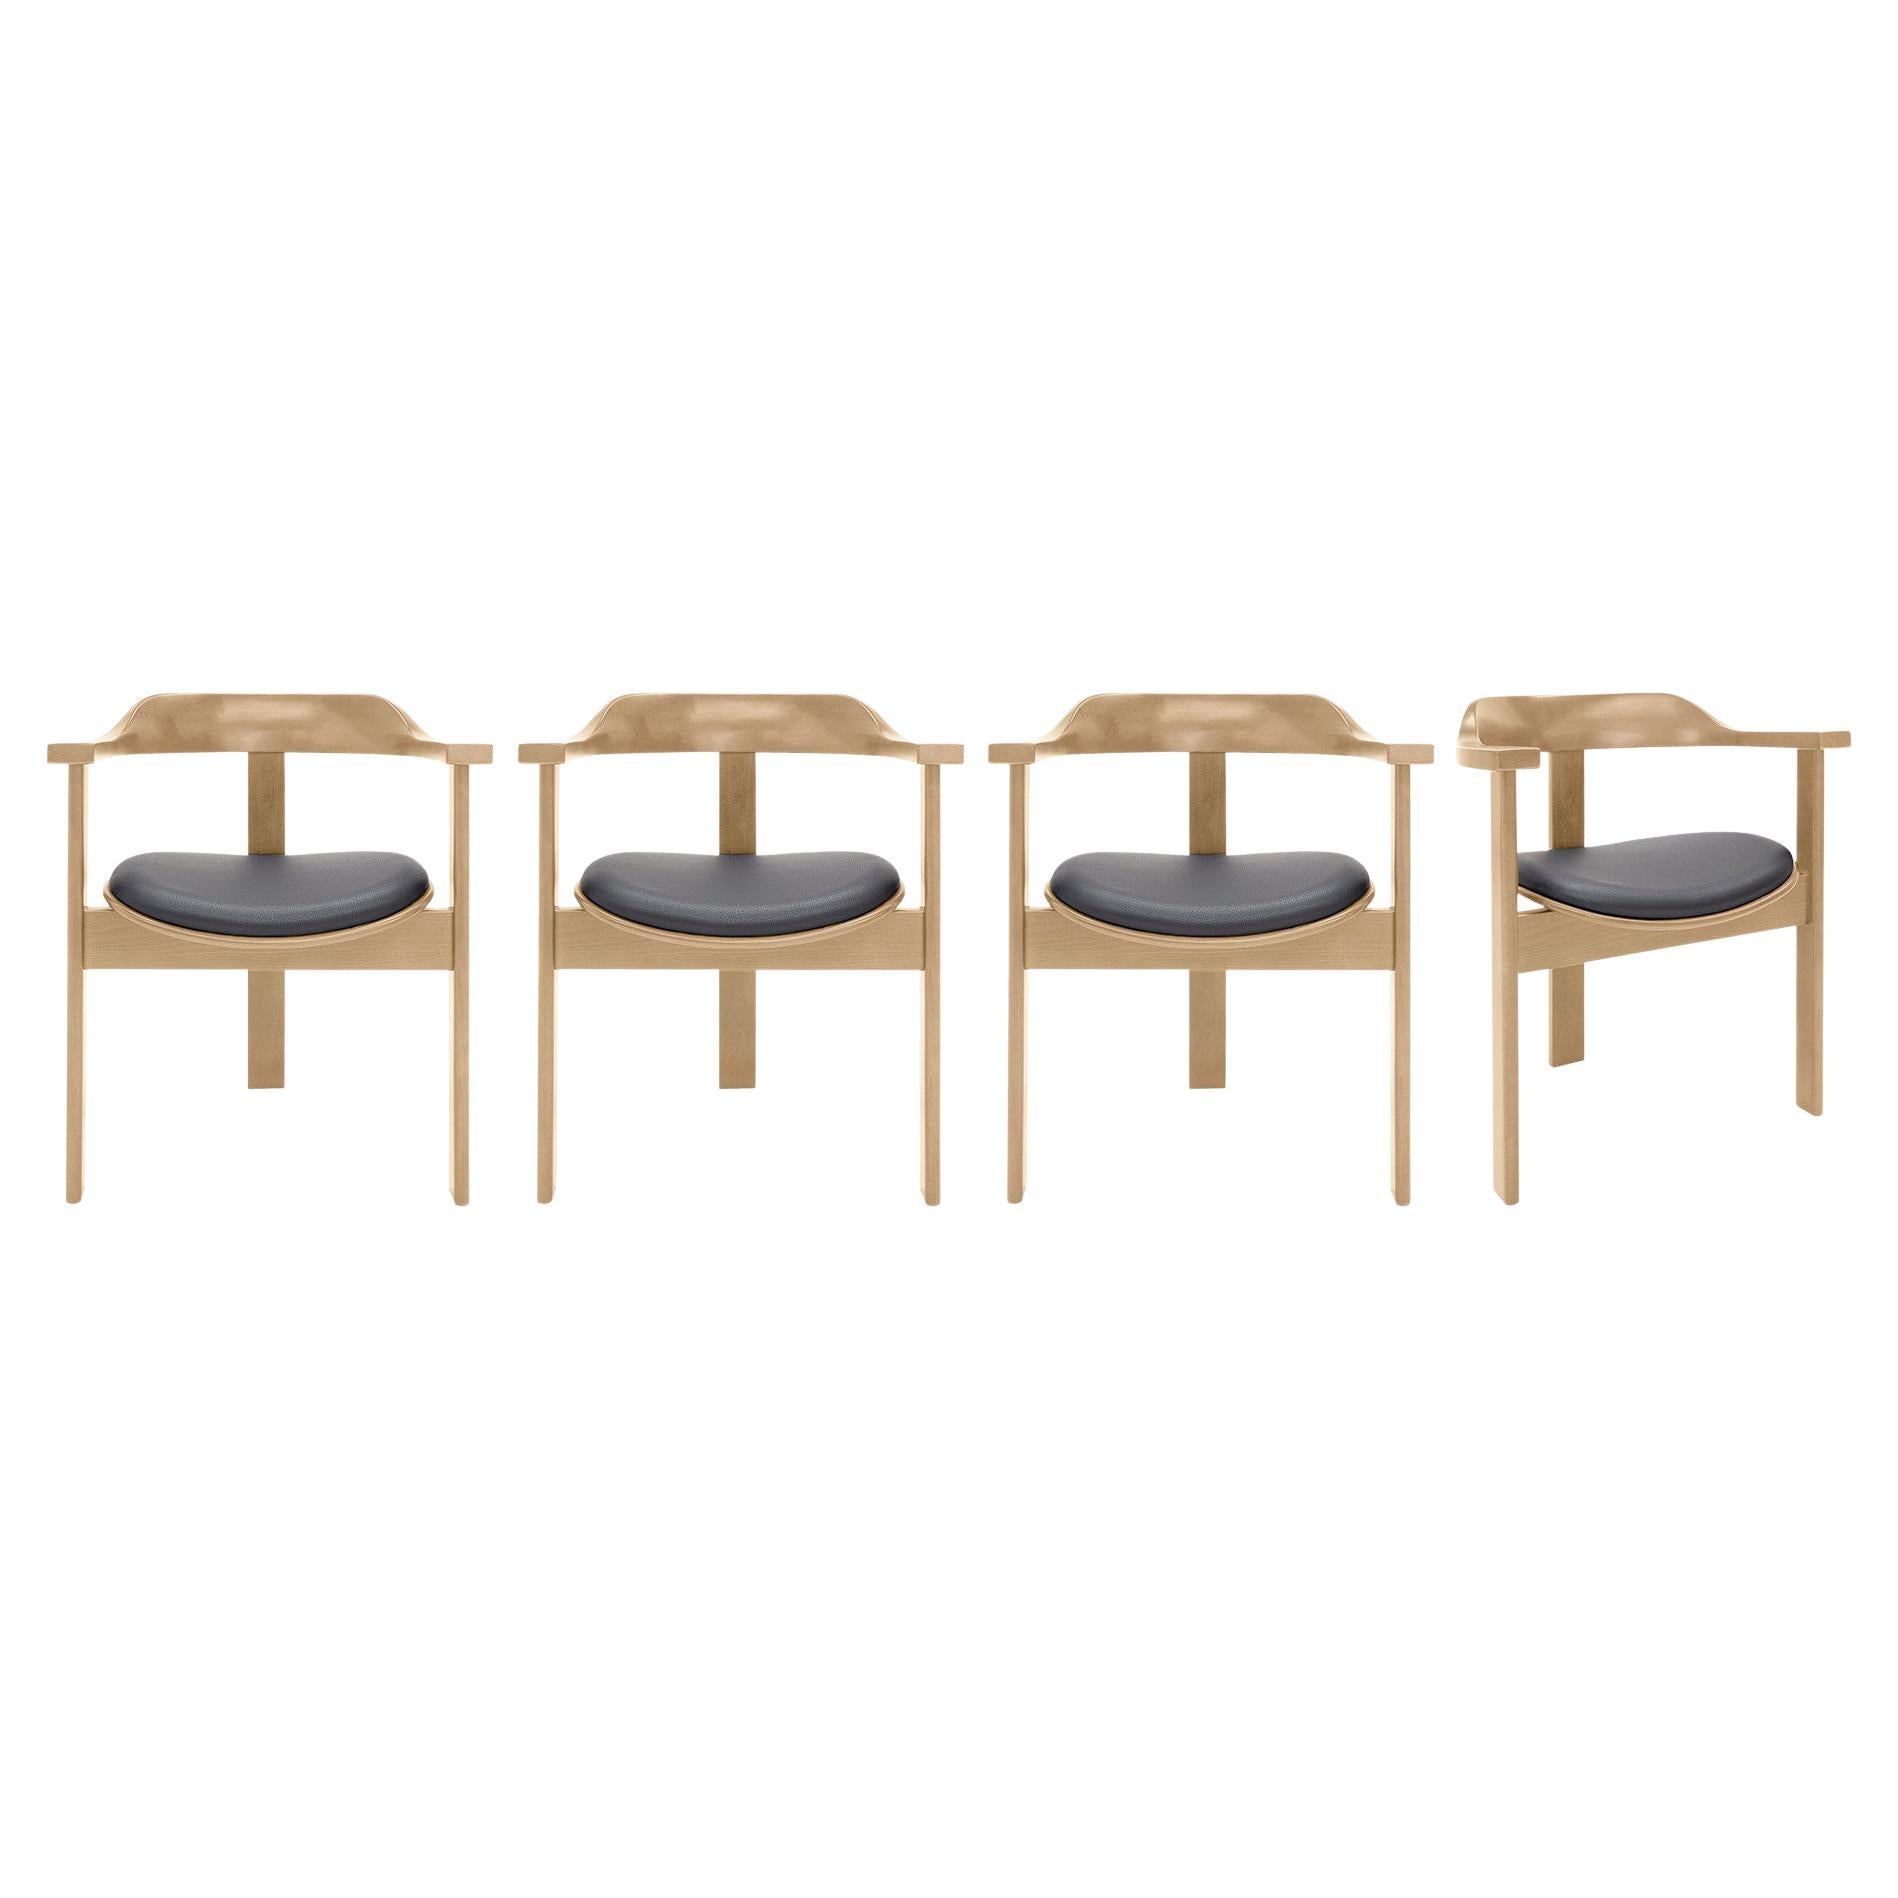 Set of 4 Natural Haussmann Armchairs by Robert & Trix Haussmann, Design 1964